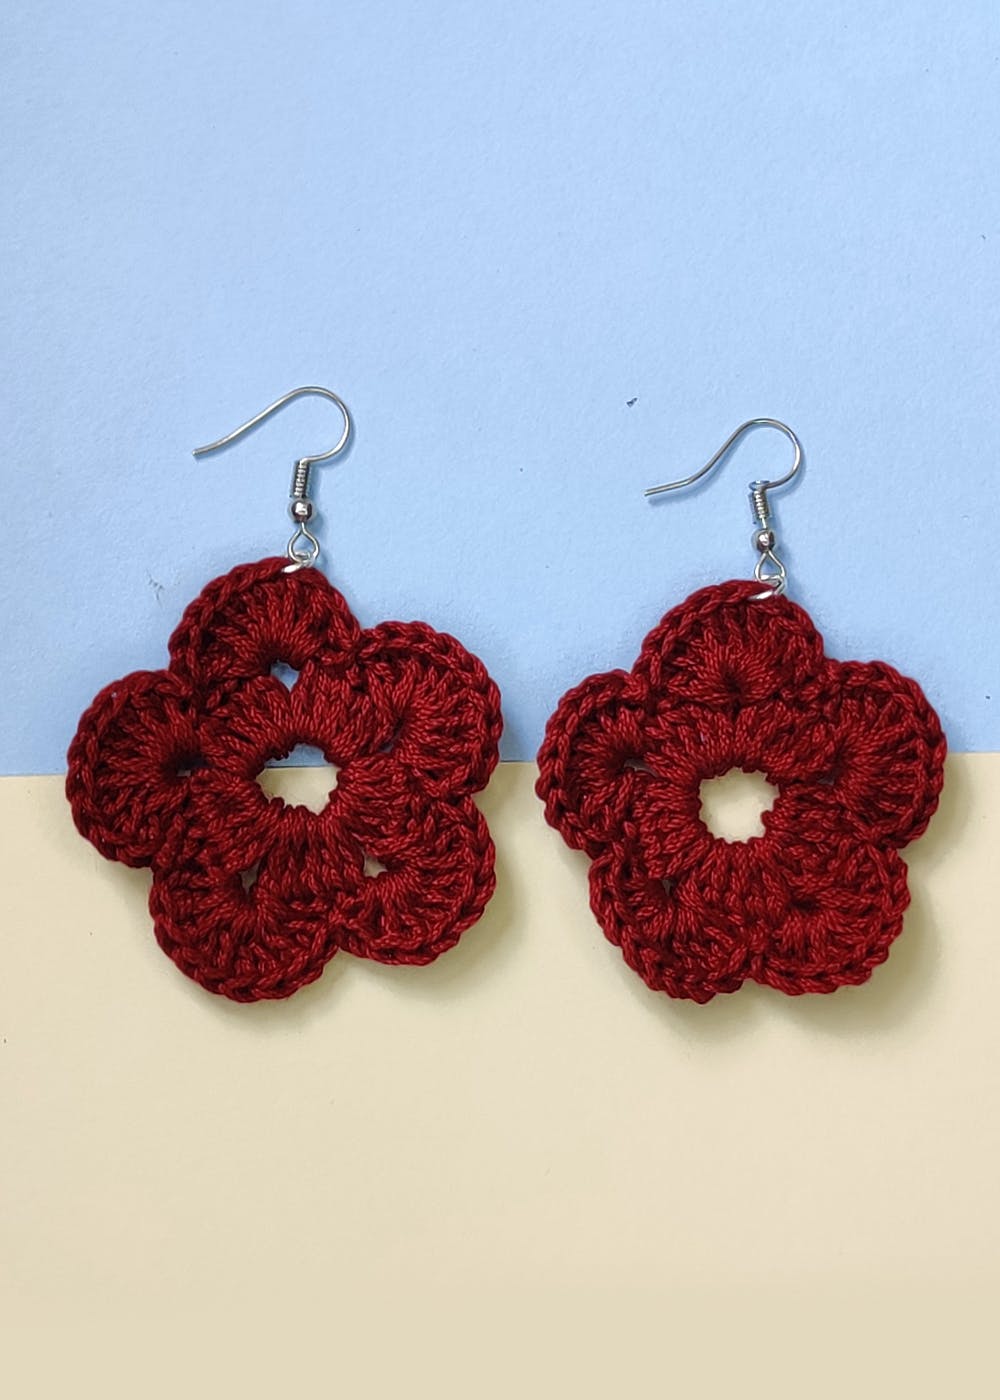 Cloud Flower Crochet Earrings  The Yarn Bowl Crochet